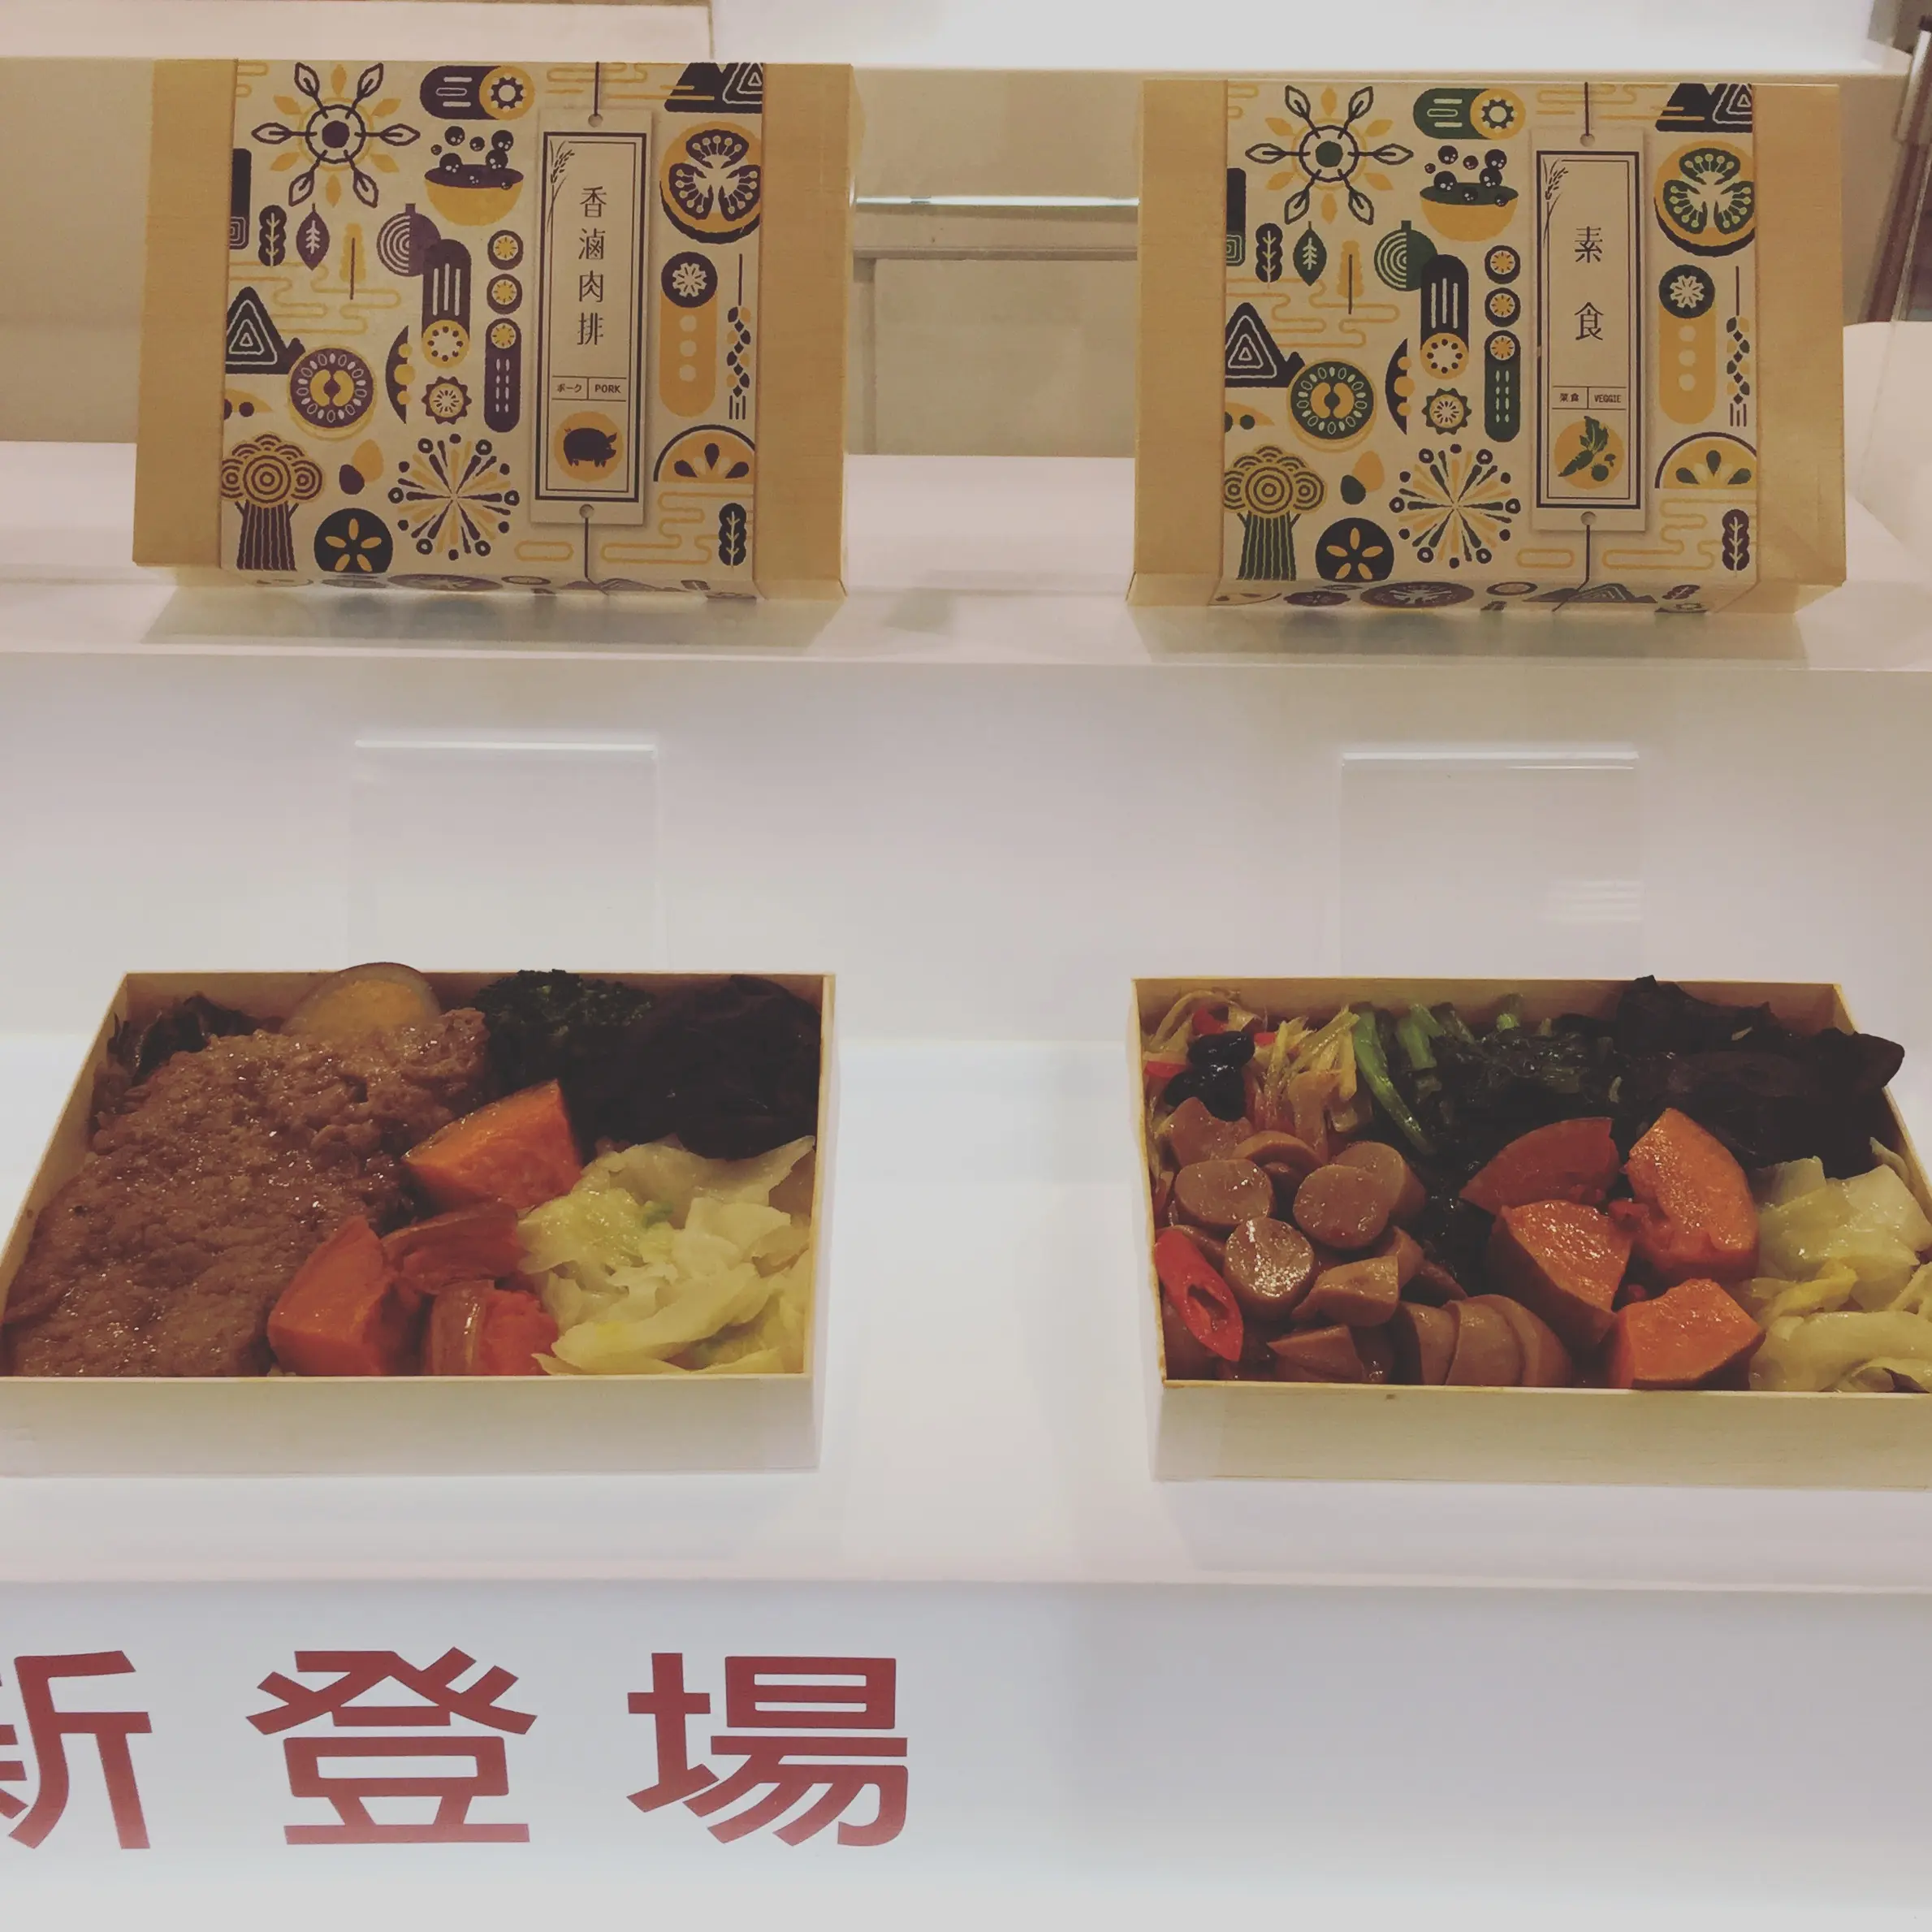 食の祭典「台湾美食展」で 台湾をまるごと味わう_1_2-1